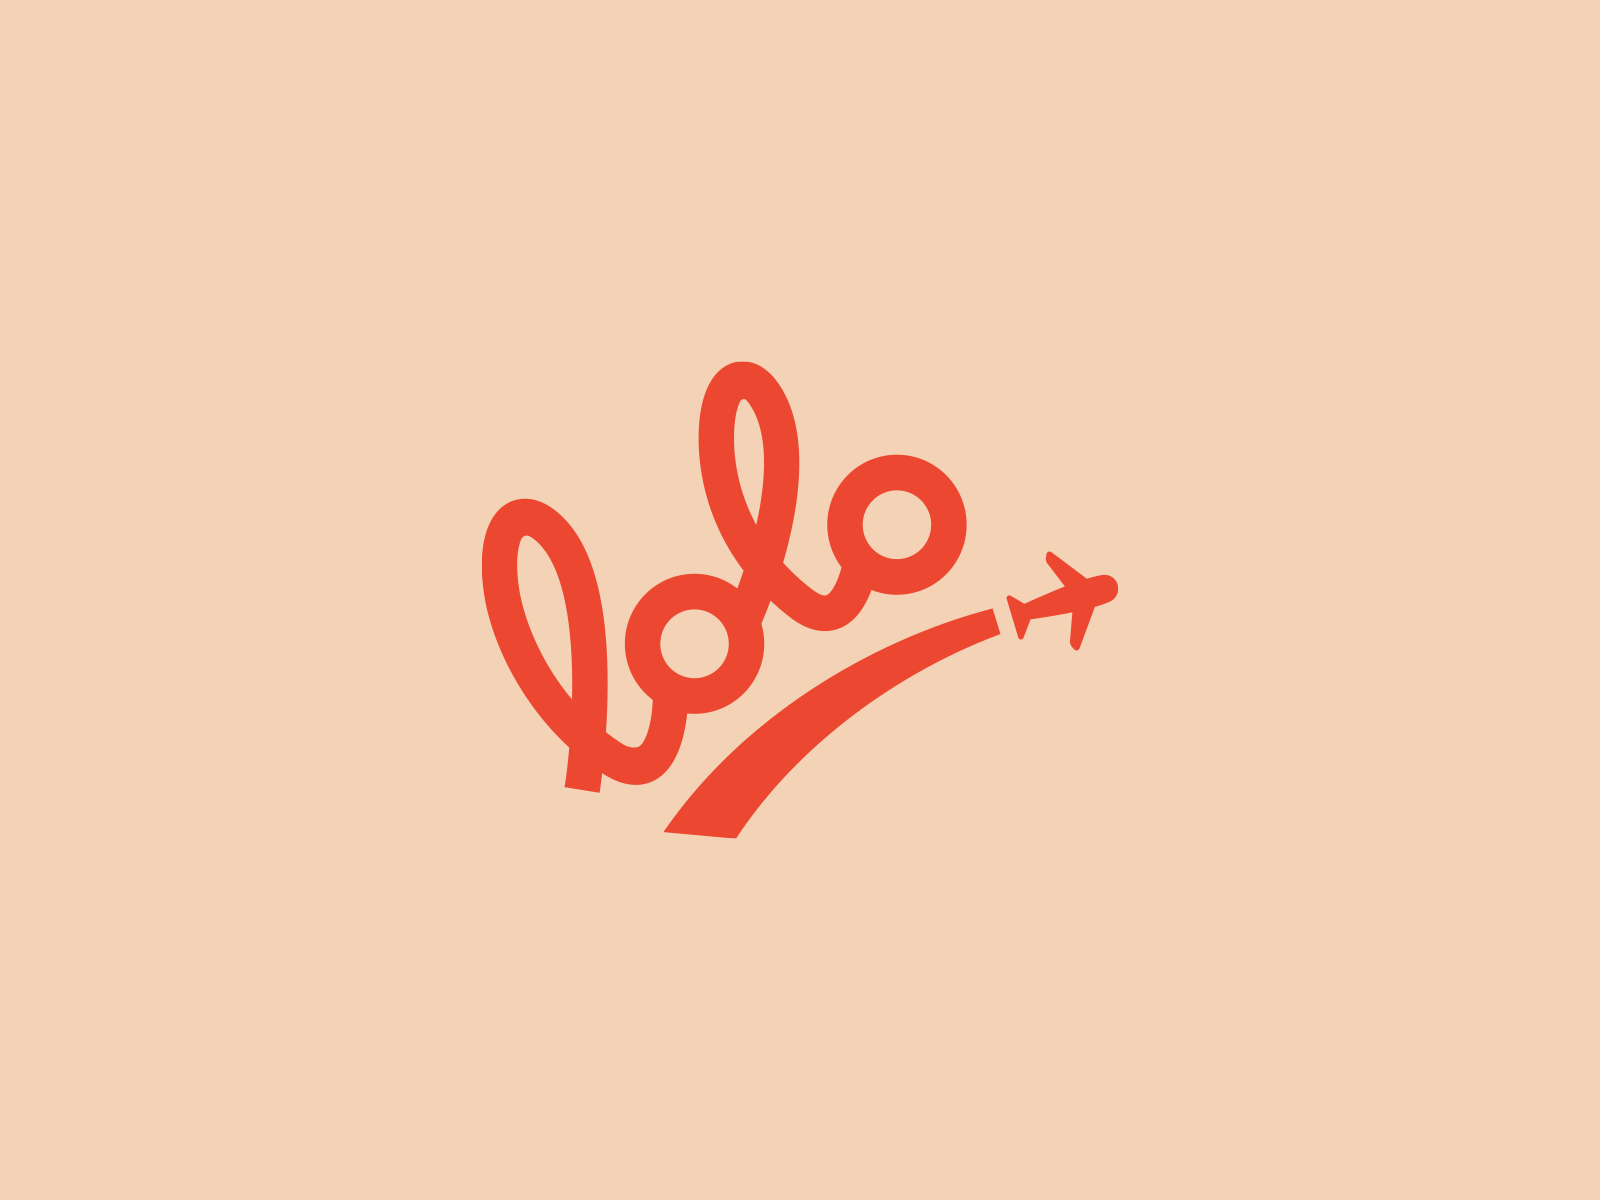 Lolo baby - logo design by Paulina Miracka on Dribbble